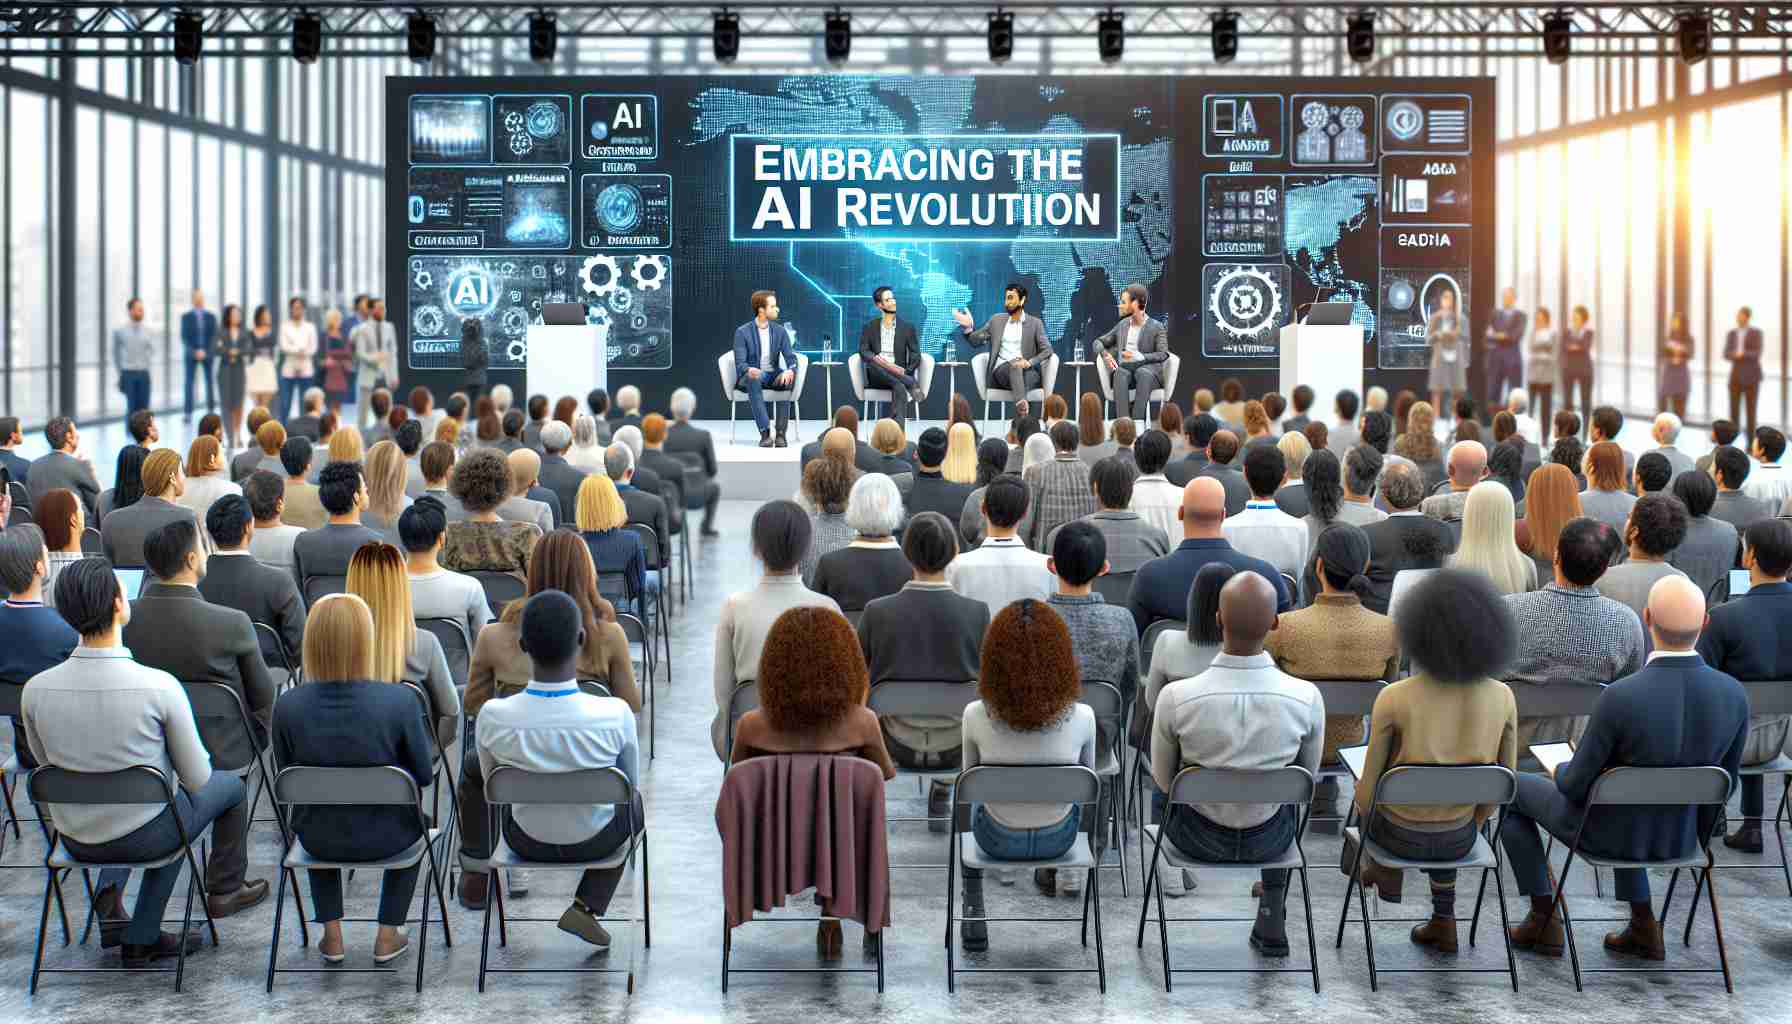 Embracing the AI Revolution: Insights from Hong Kong’s News Expo Seminar